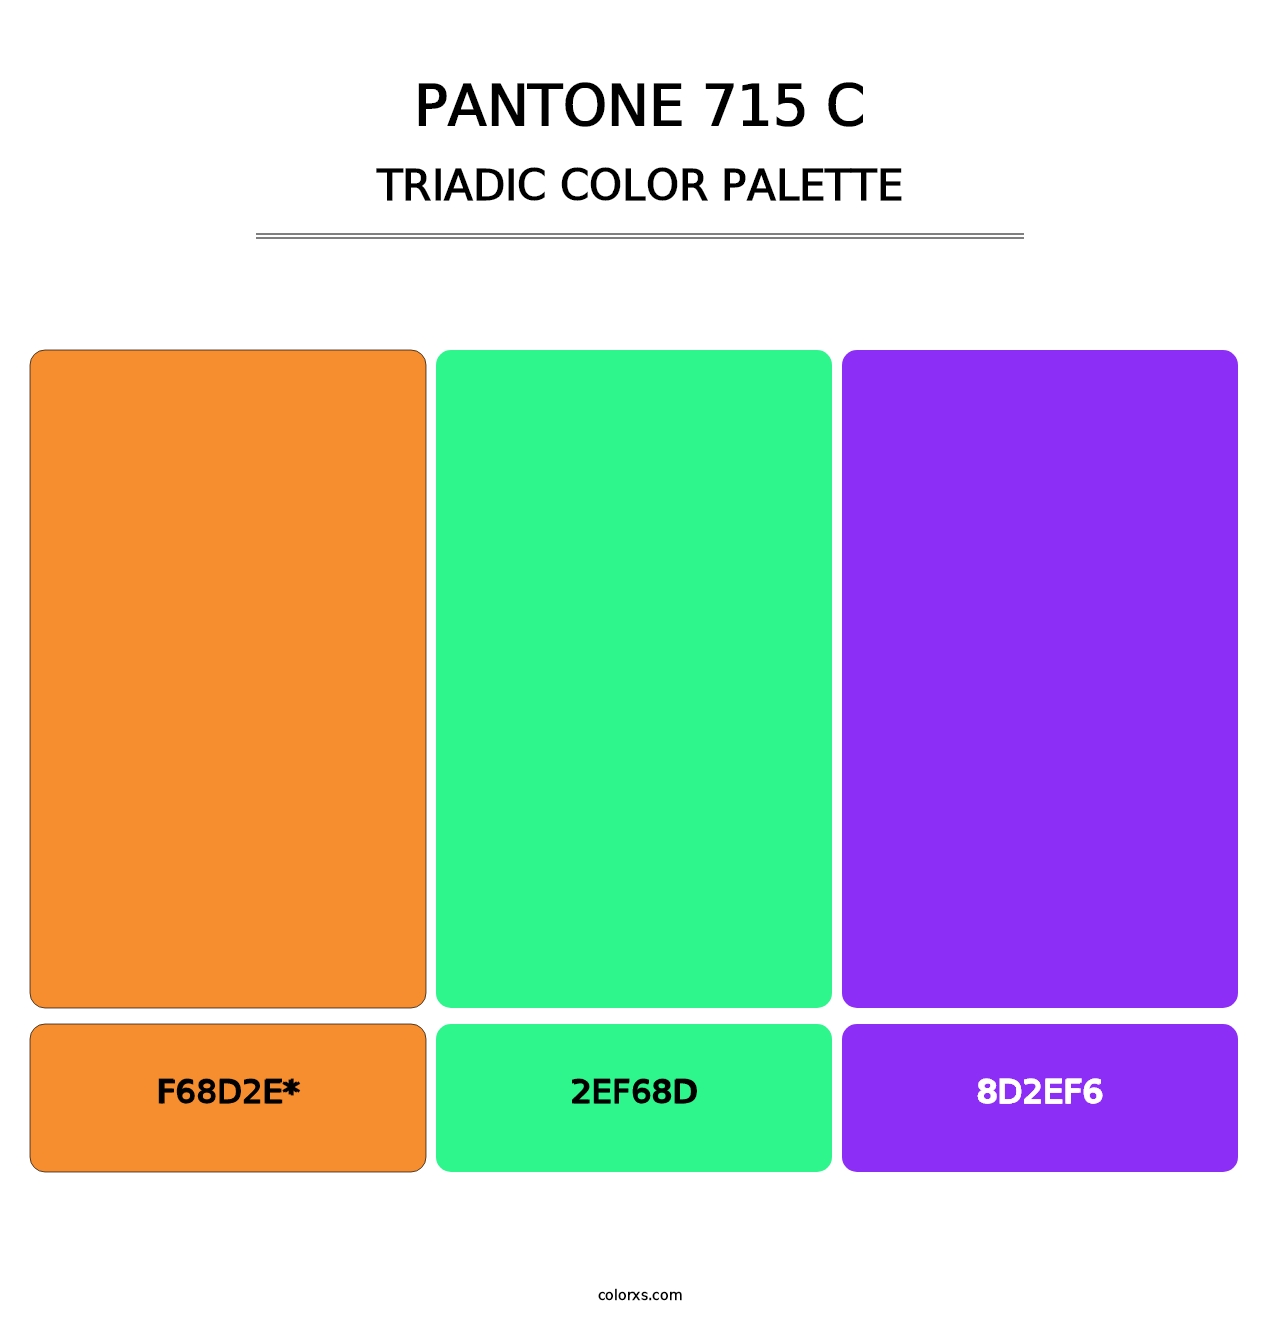 PANTONE 715 C - Triadic Color Palette